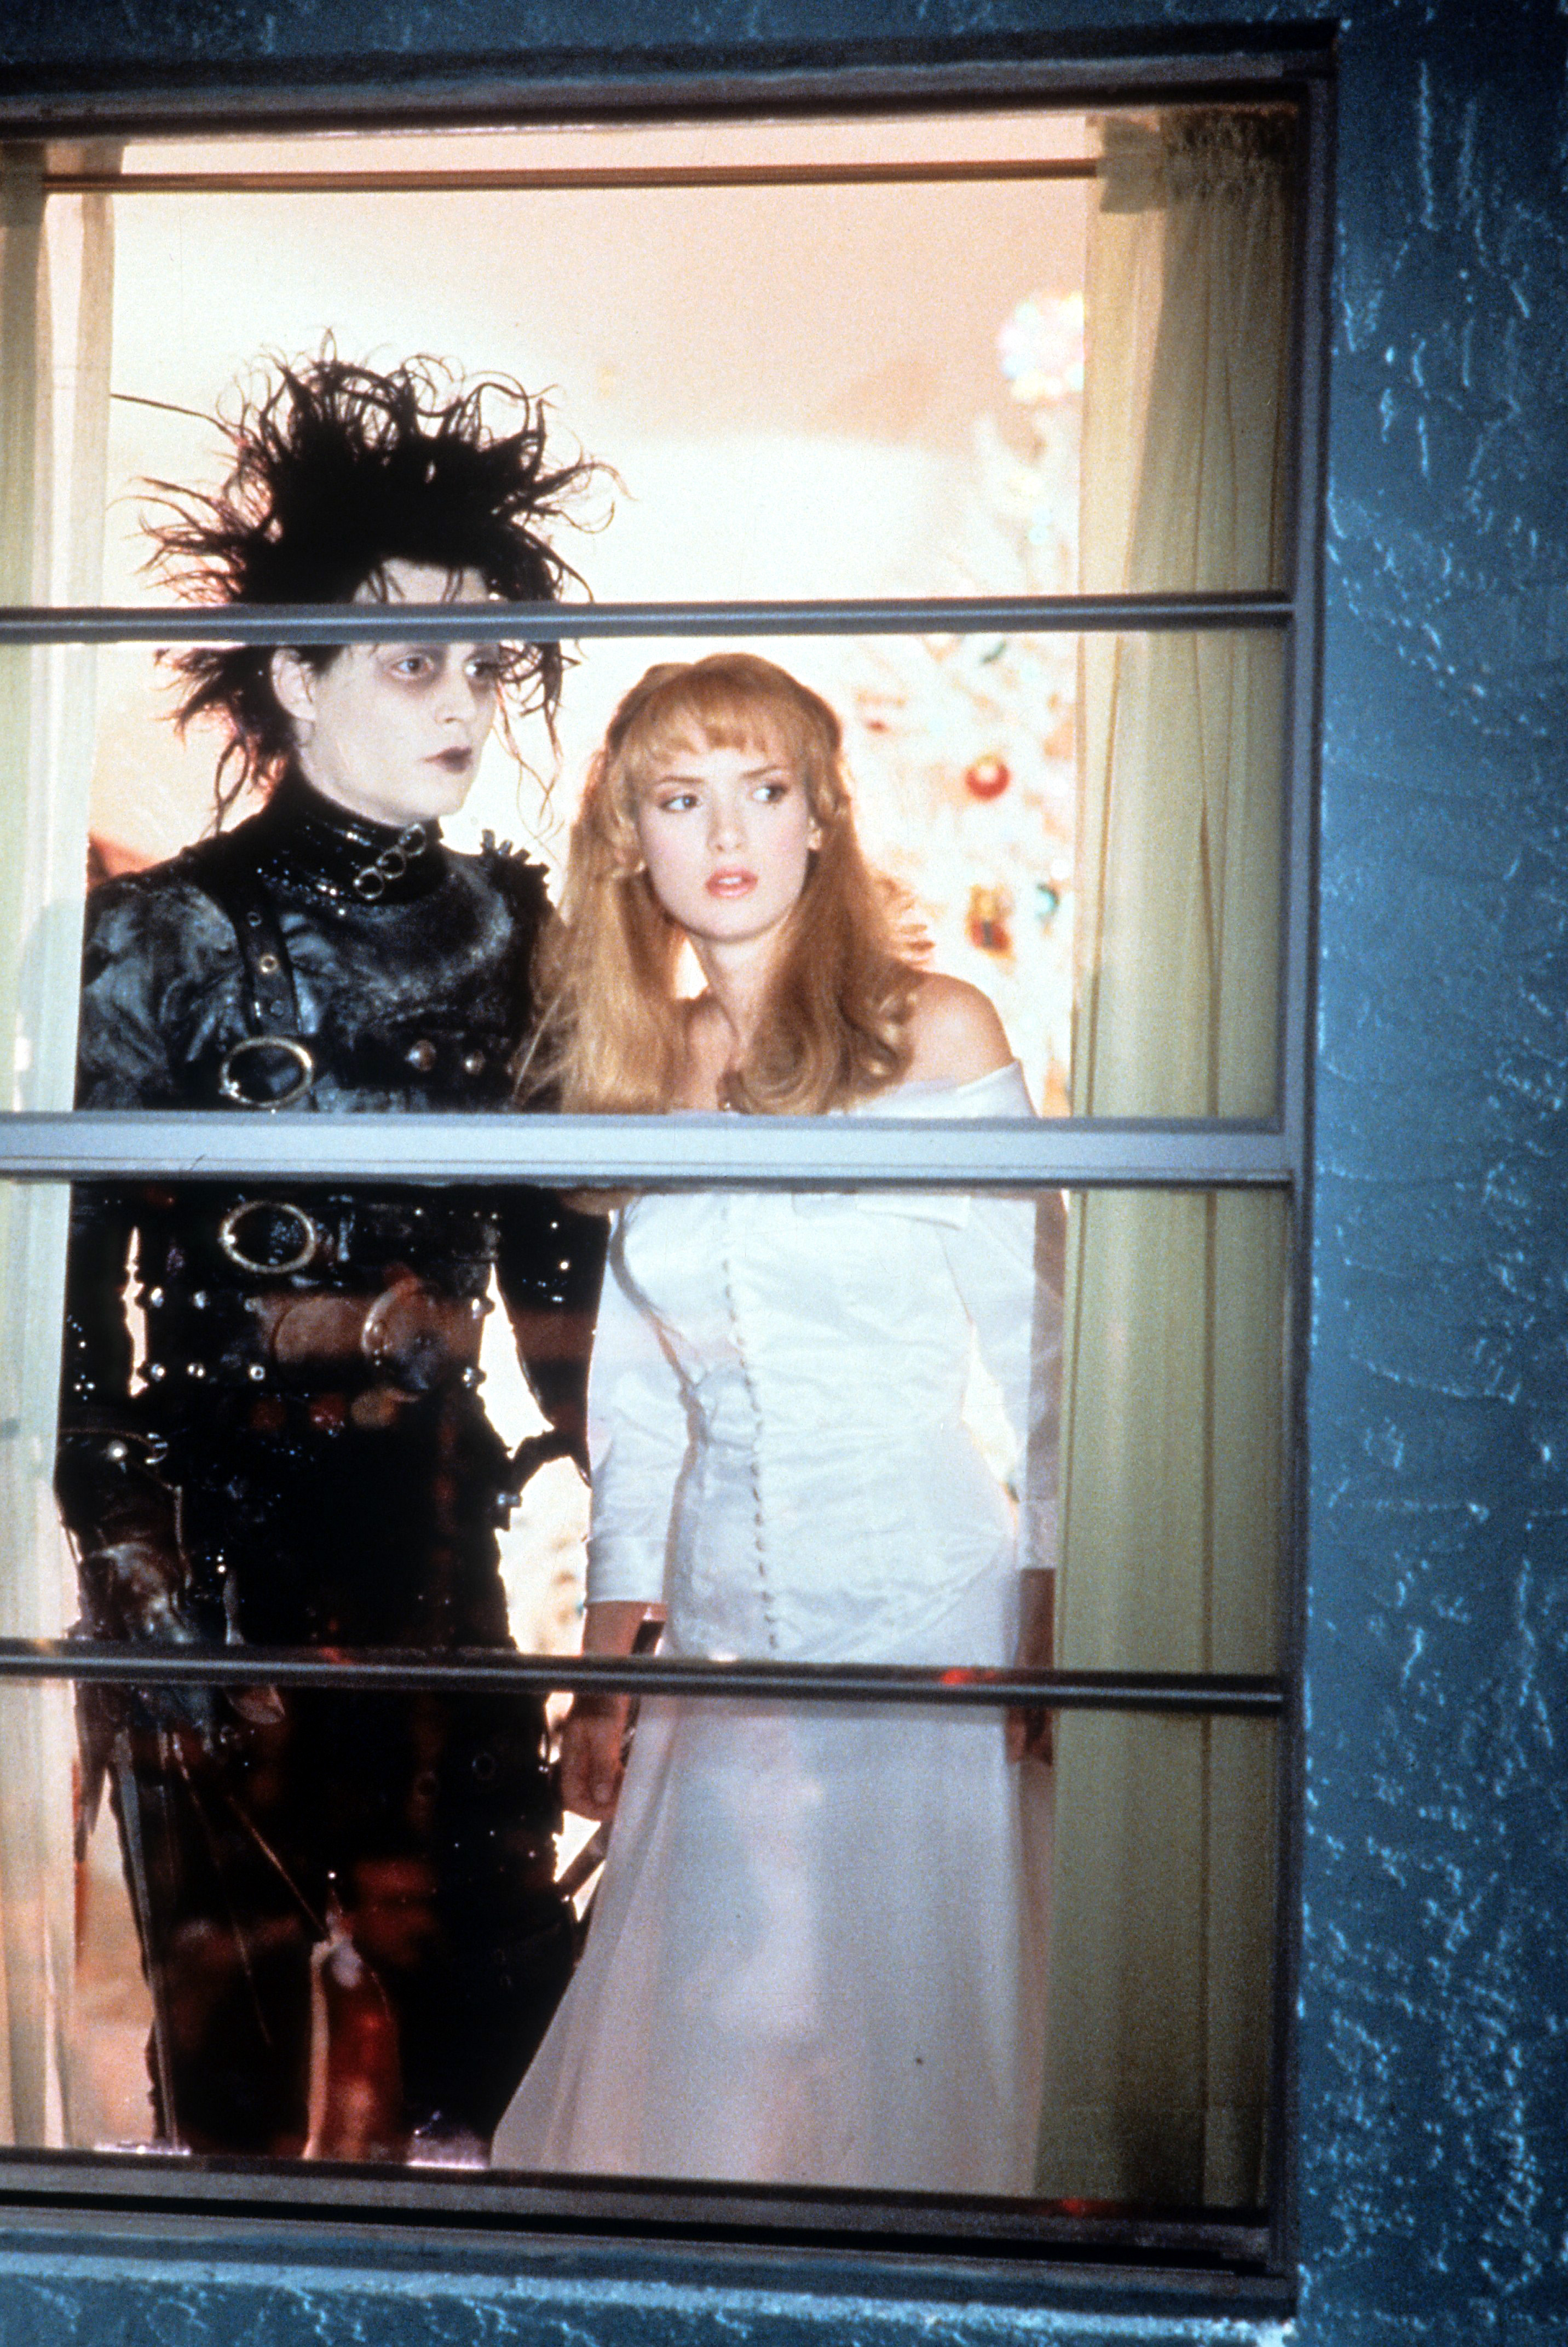 Johnny Depp y la actriz Winona Ryder fotografiados mirando por la ventana en una escena de la película "Edward Scissorhands", el 1 de enero de 1990. | Foto: Getty Images